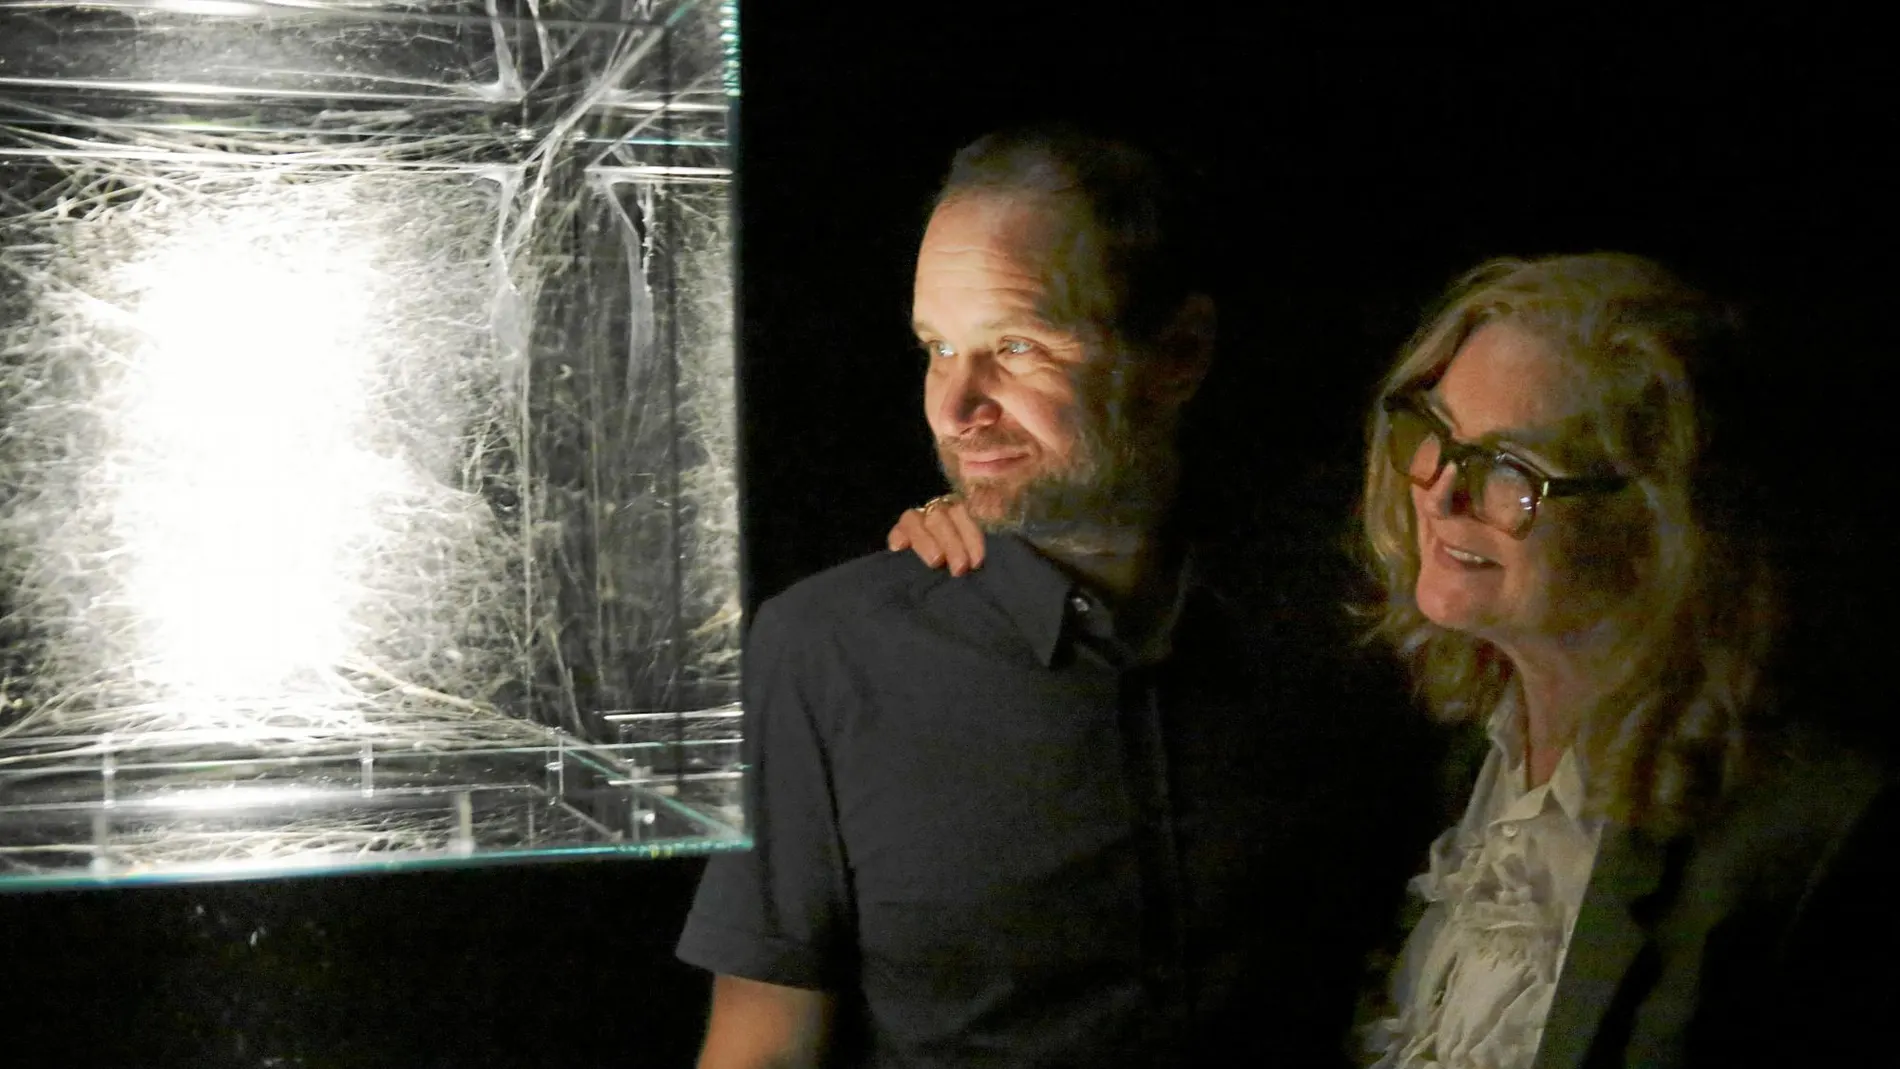 Tomás Saraceno y Francesca Thyssen-Bornemisza posan junto a una de las obras del artista expuestas en el Thyssen